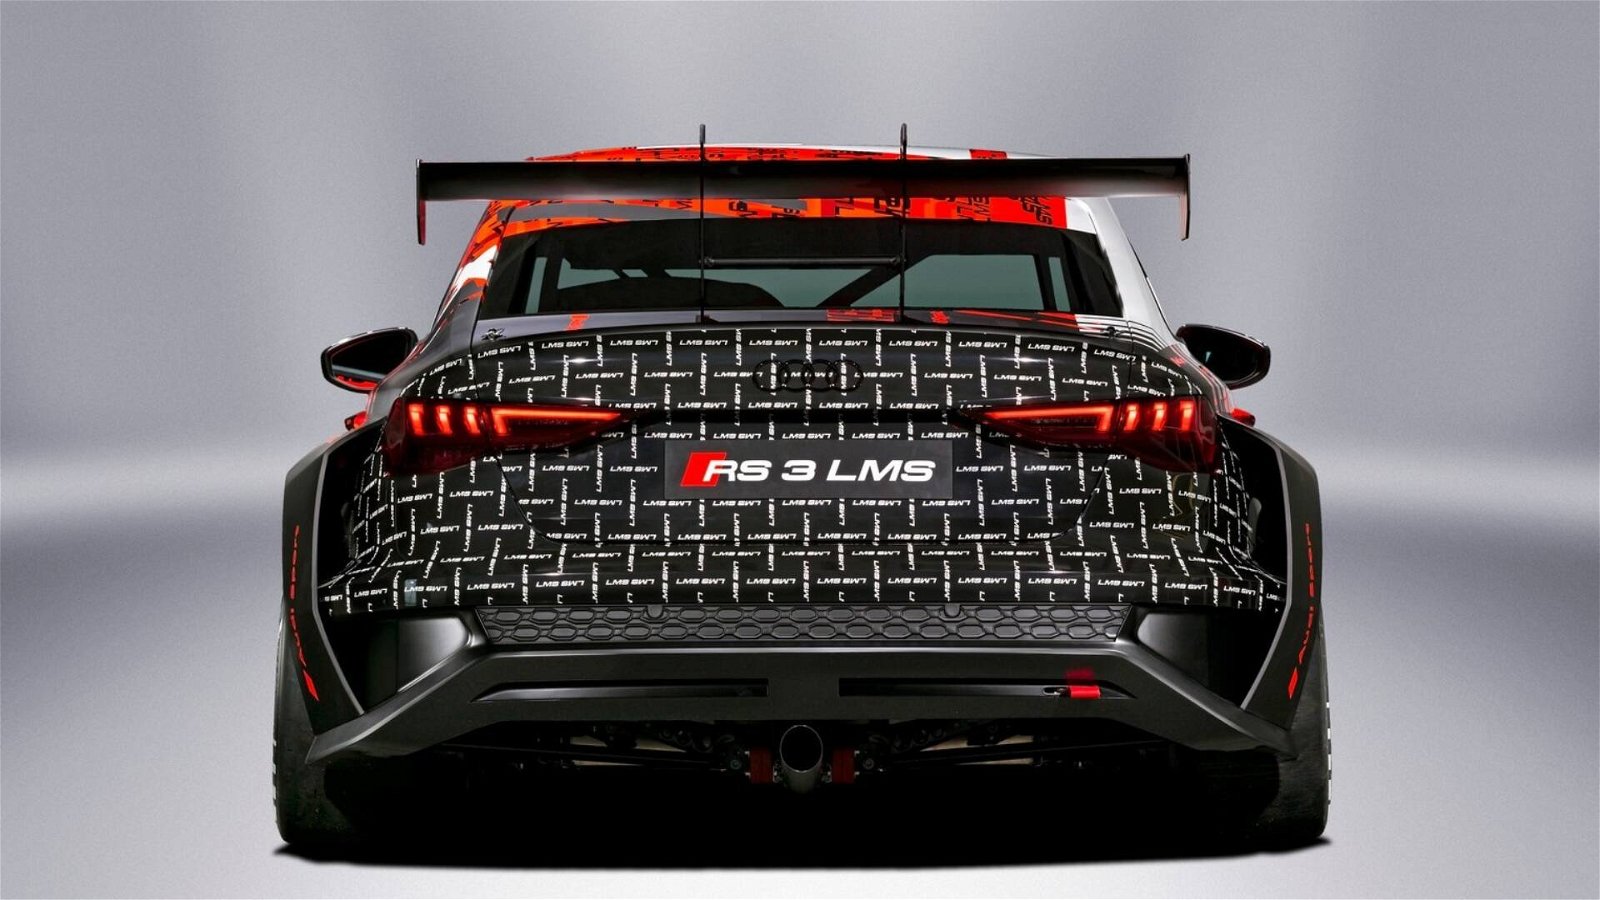 Immagine di Audi RS 3 LMS: la nuova versione del mostro da pista